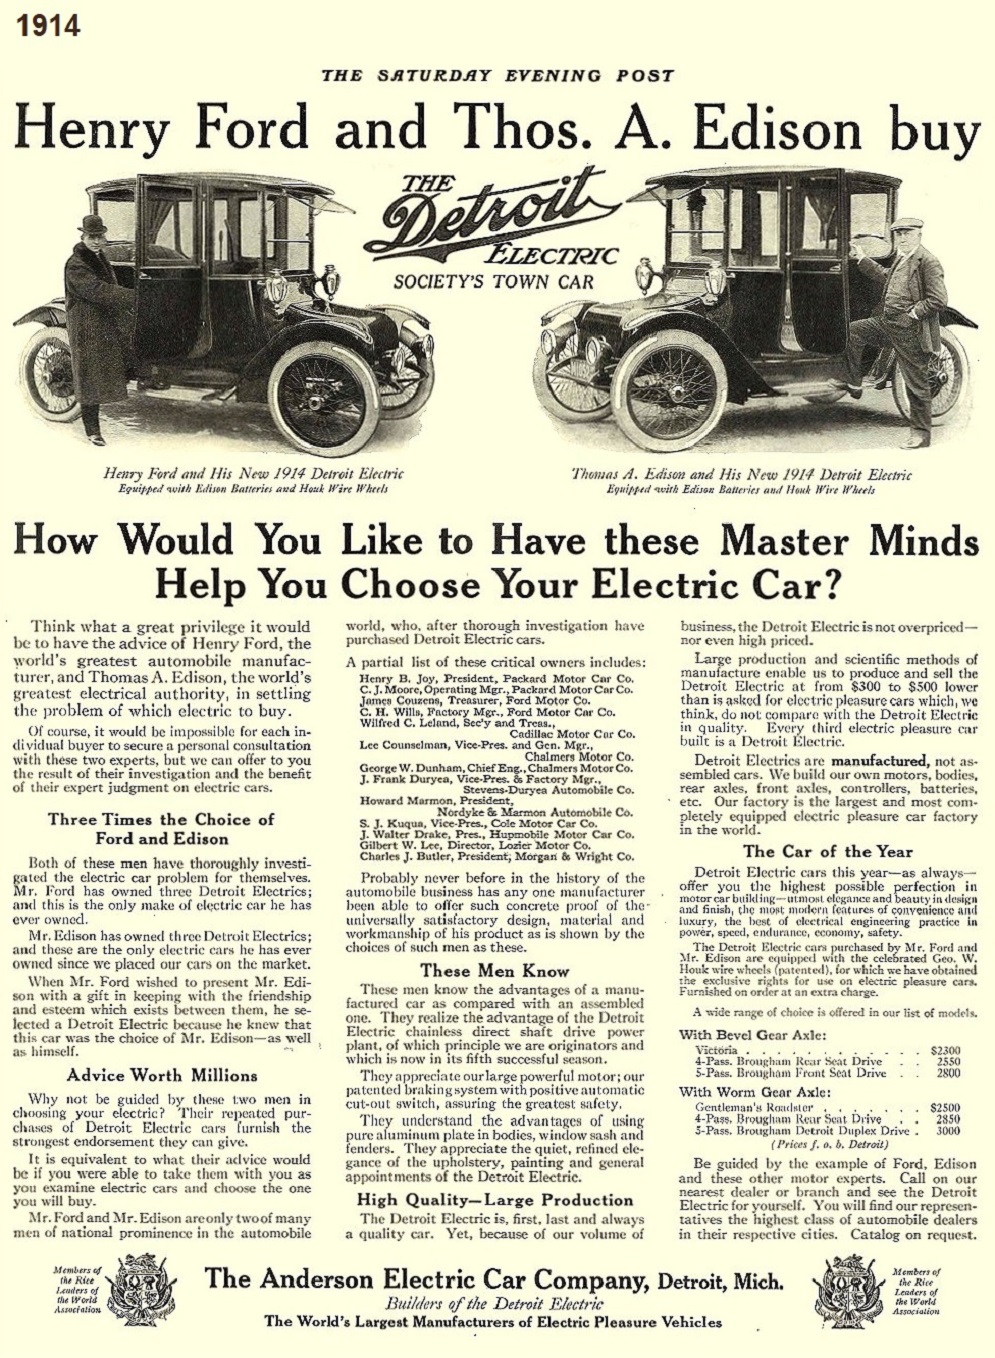 1914 Detroit Electric 002